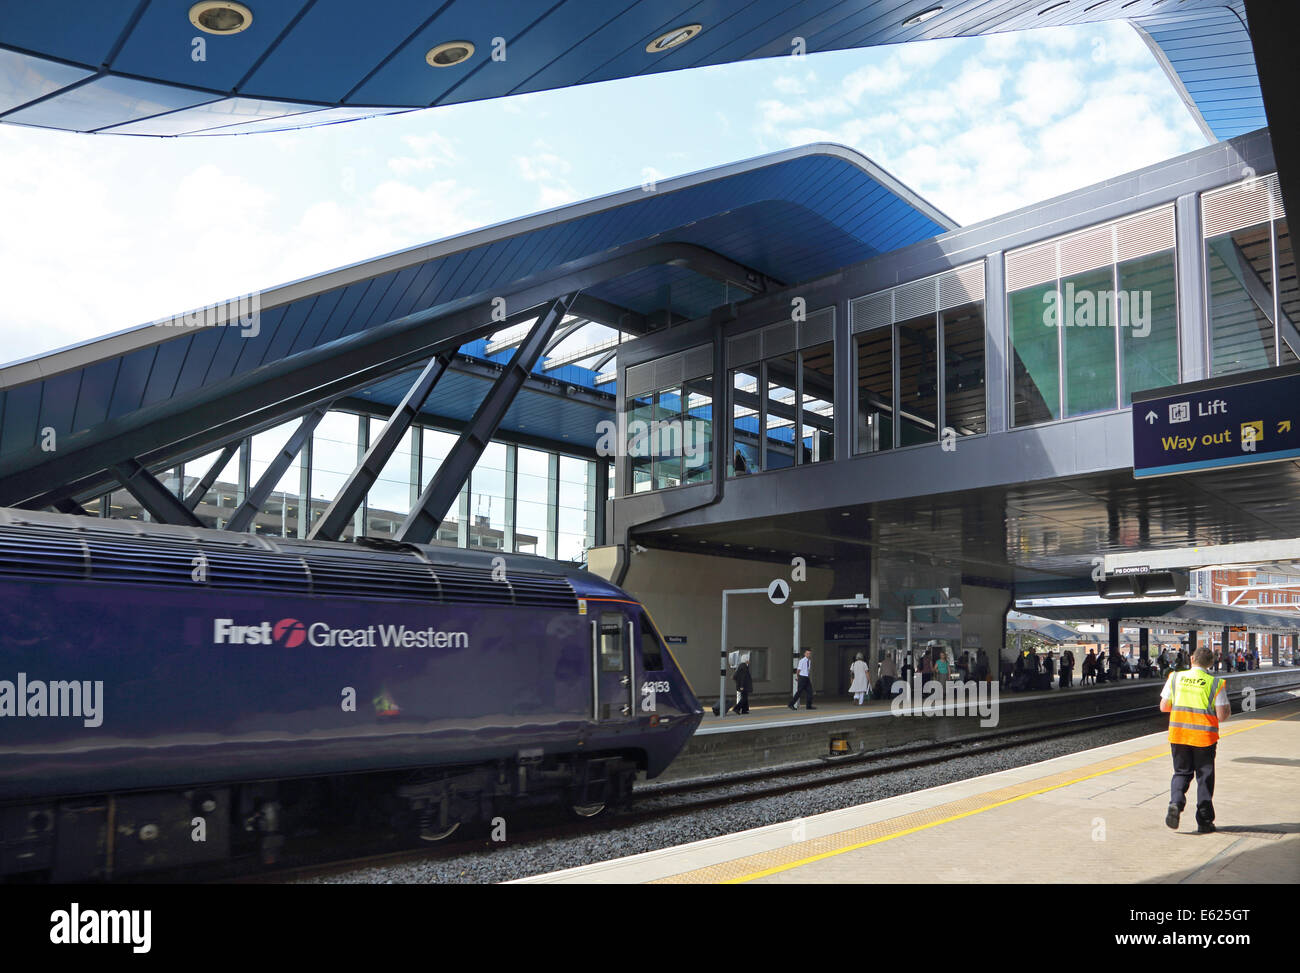 Lesestation. Ein First Great Western Zug kommt am Gleis 9. Angezeigte neue Vordächer und Transfer Bridge im Jahr 2013 eröffnet Stockfoto